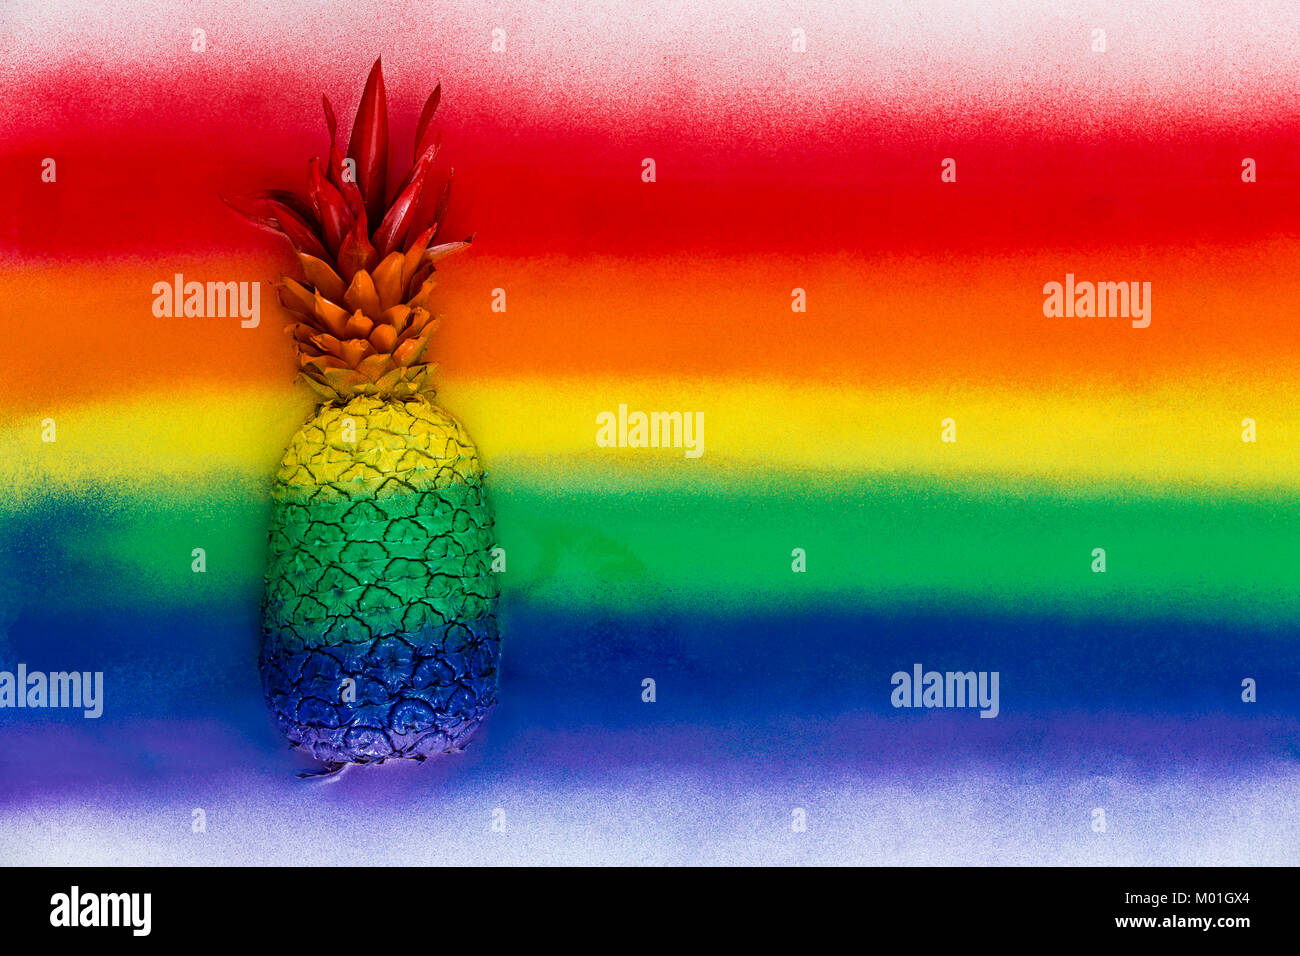 Ganze reife Ananas mit seinen Büschel Blätter in regenbogenfarbenen Streifen getarnt sprühte auf einem hölzernen Hintergrund mit Kopie Raum Stockfoto